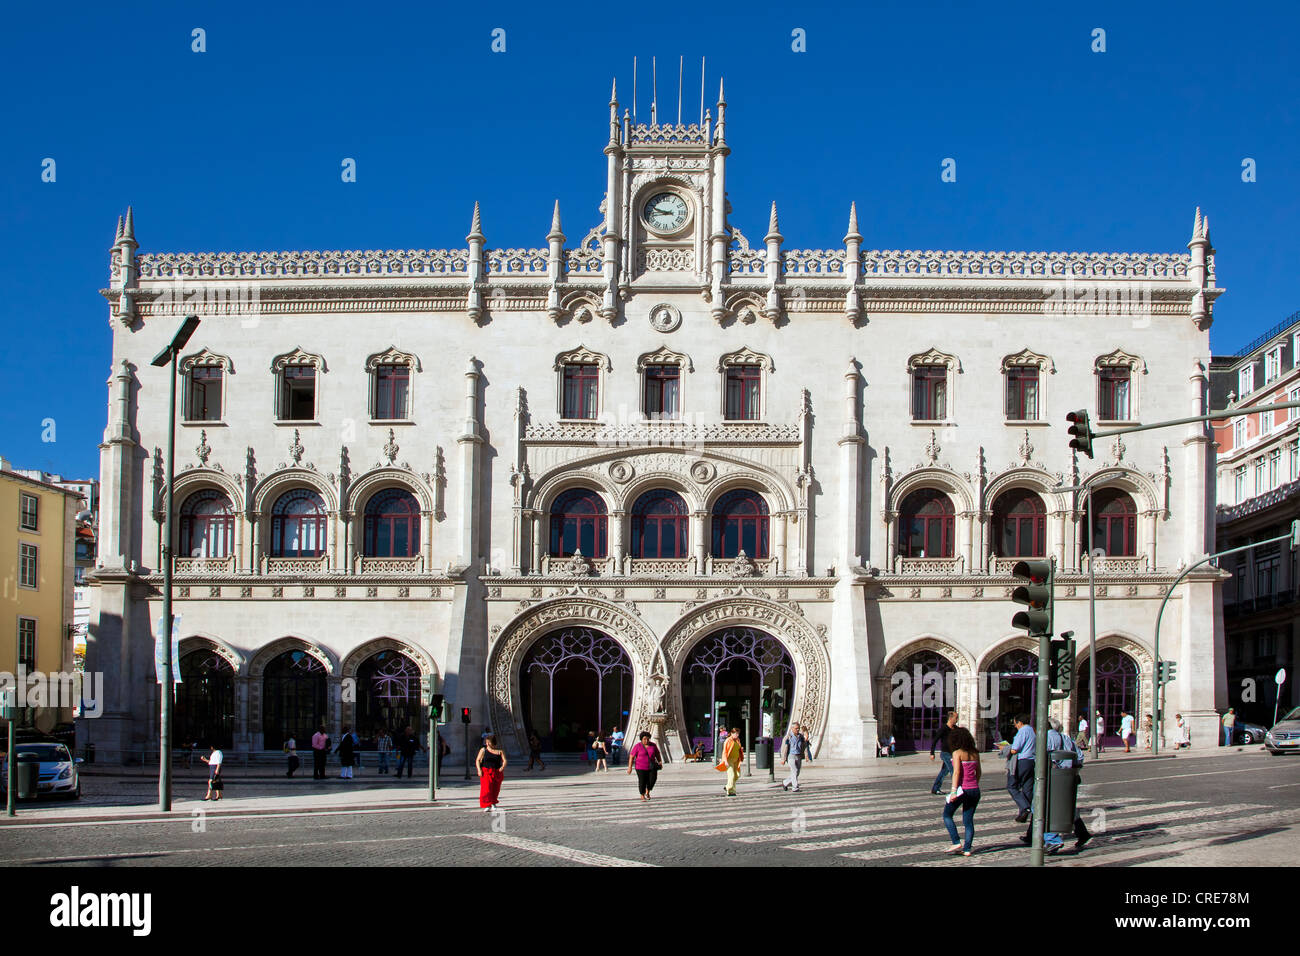 La gare de Rossio, Estacao do Rossio, avec une entrée en forme de fer à cheval, sur la Praça de Dom Pedro IV square, dans le quartier de Banque D'Images